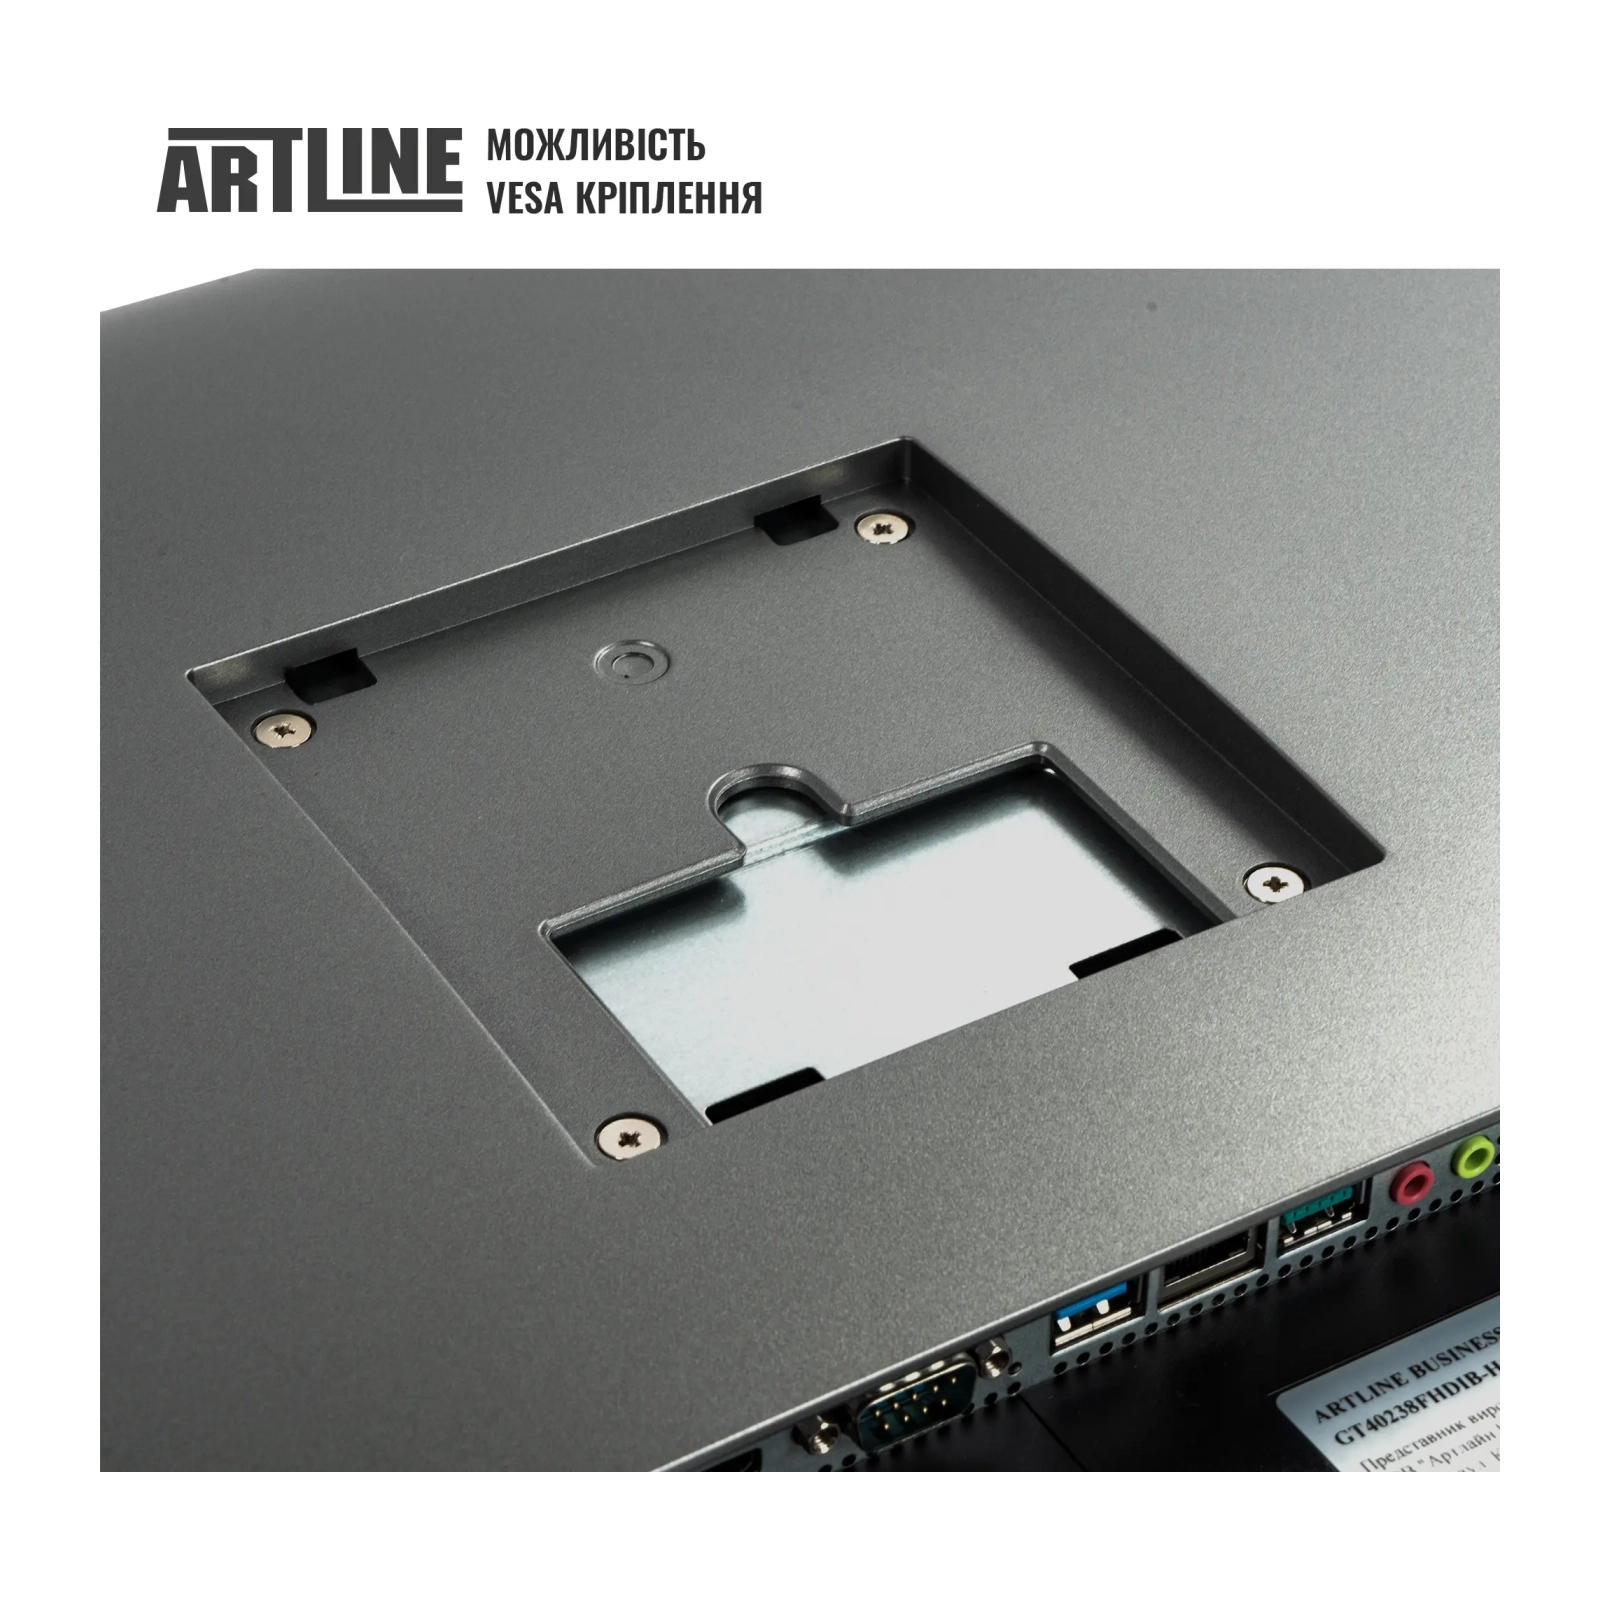 Компьютер Artline Business GT41 (GT41v01) изображение 4